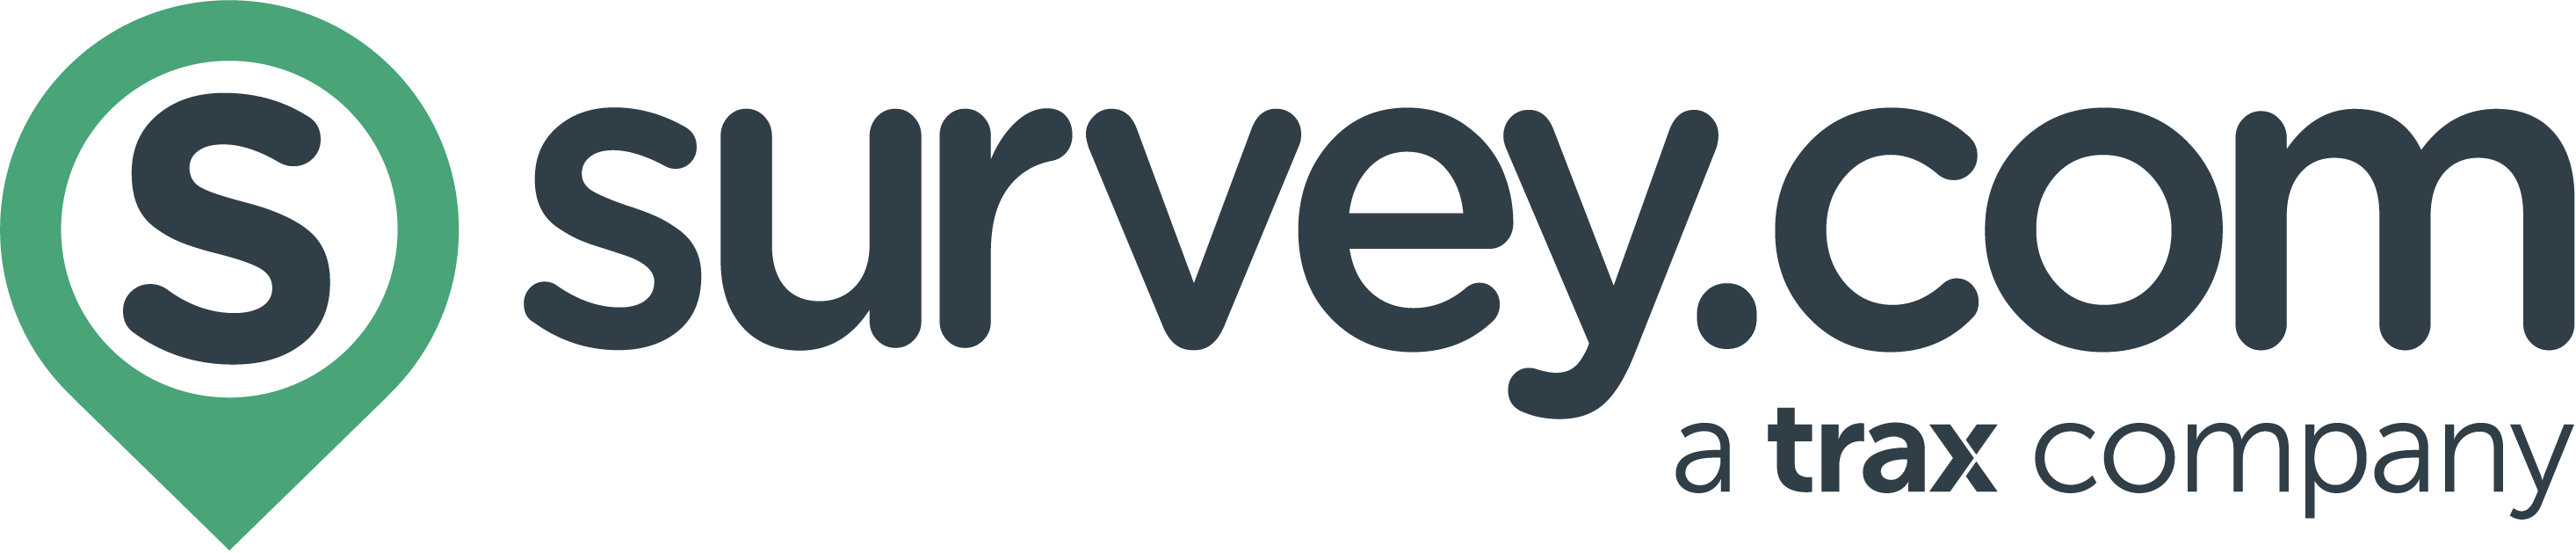 Survey.com Logo